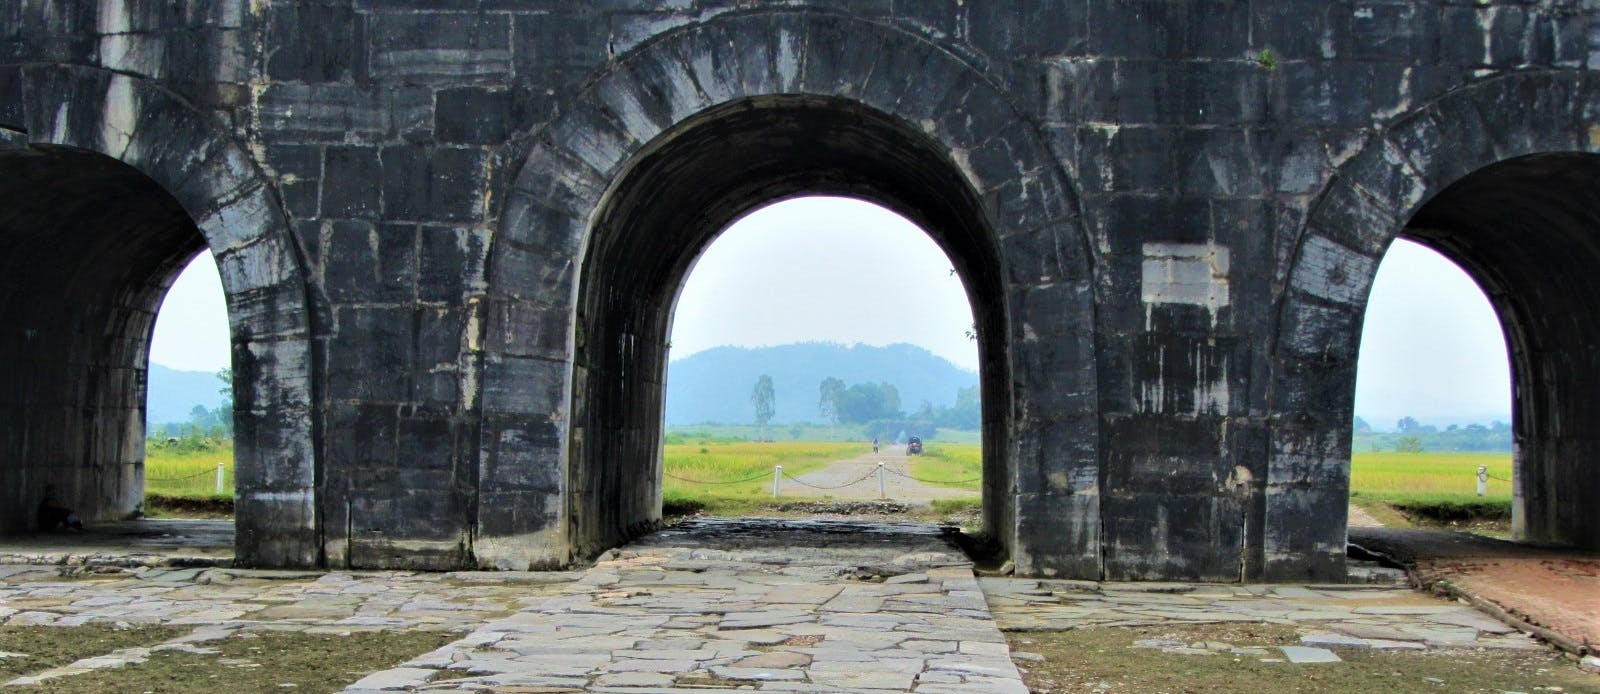 Ho Ancient Citadel, Thành Nhà Hồ, Thanh Hóa Province, Vietnam